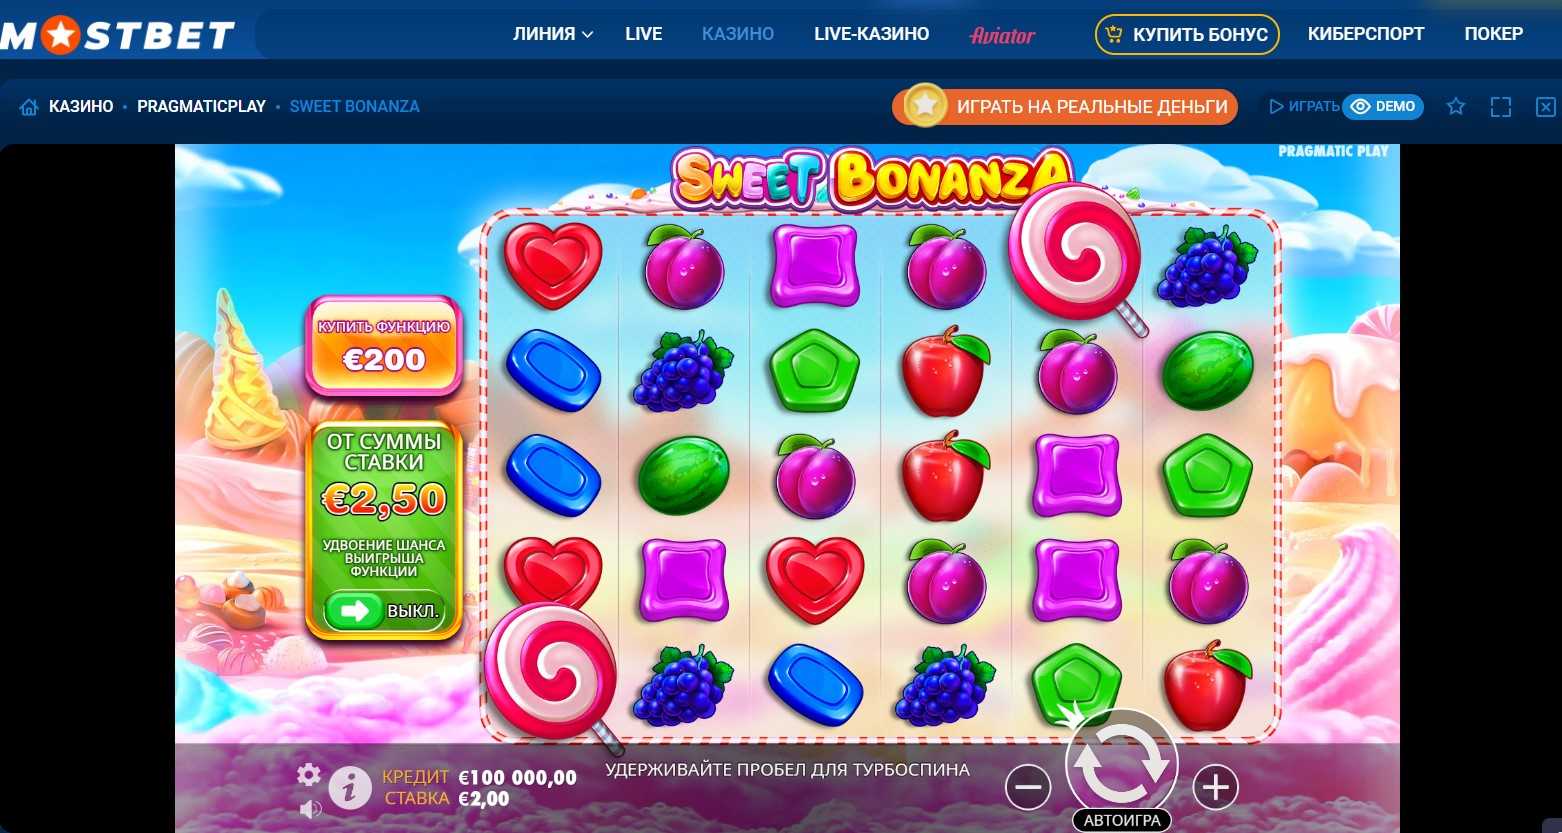 Игровой автомат Sweet Bonanza в онлайн-казино Mostbet